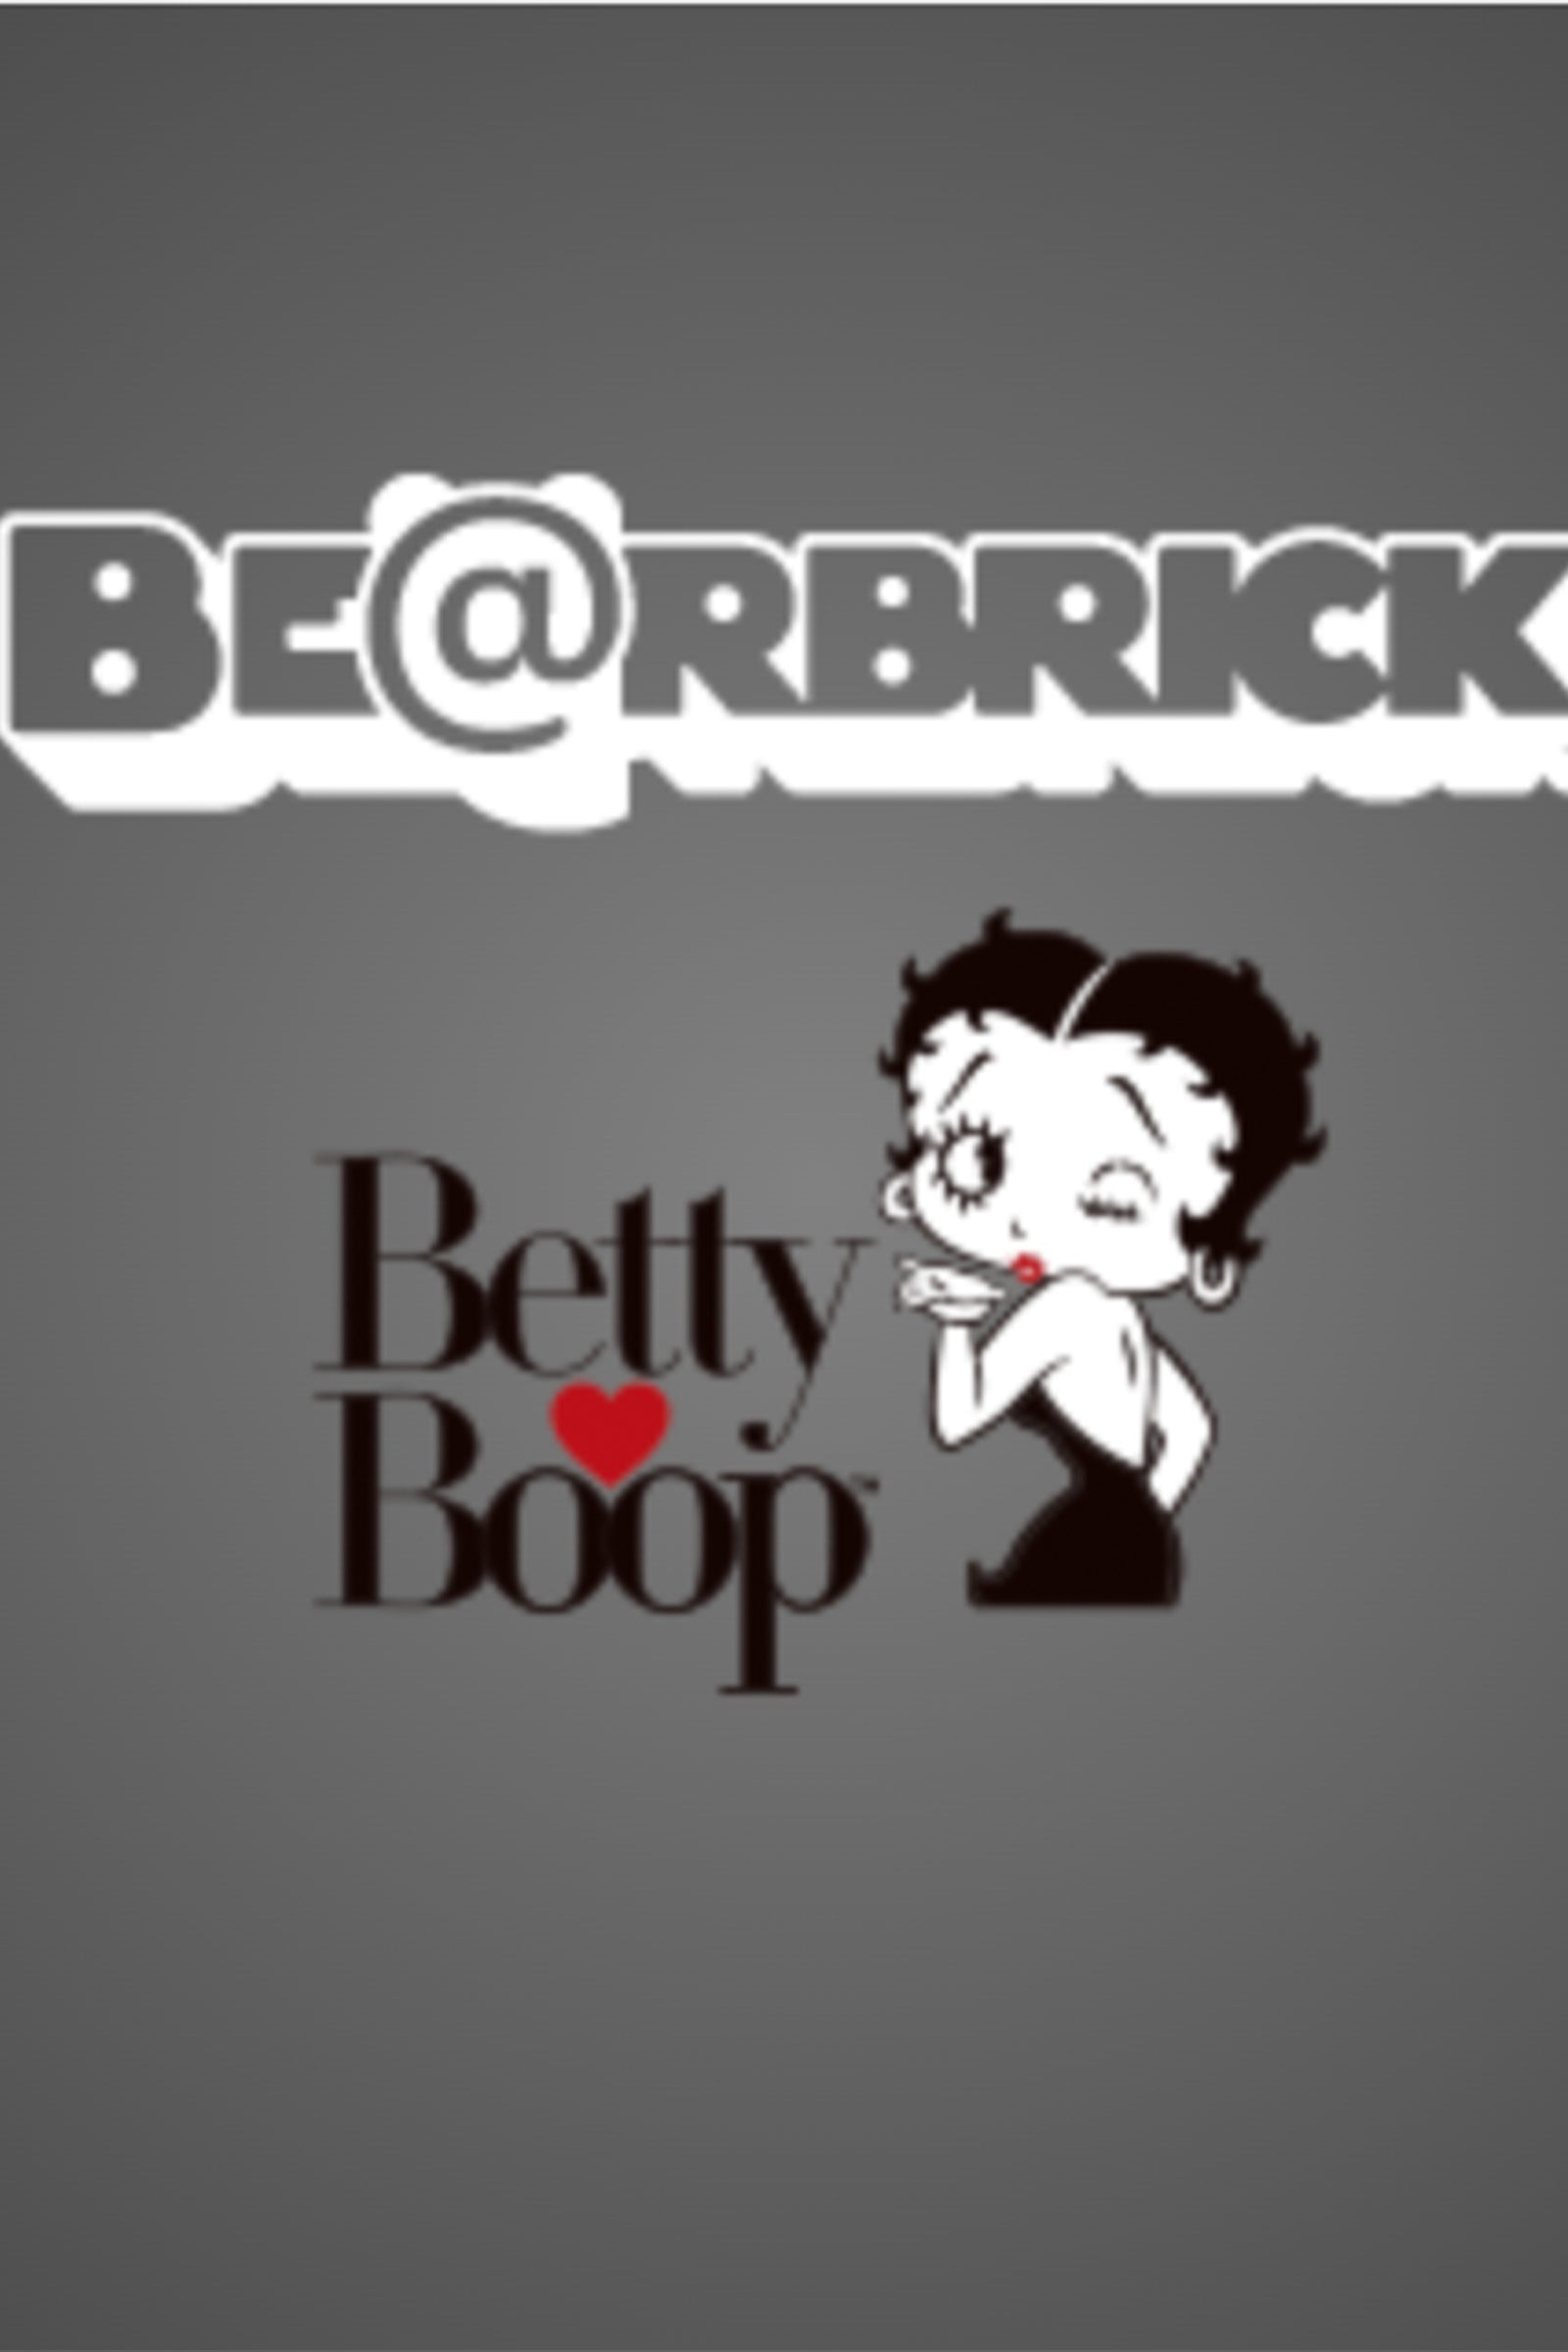 ベアブリック/BE＠RBRICK Betty Boop(TM) BLACK & WHITE/べ 